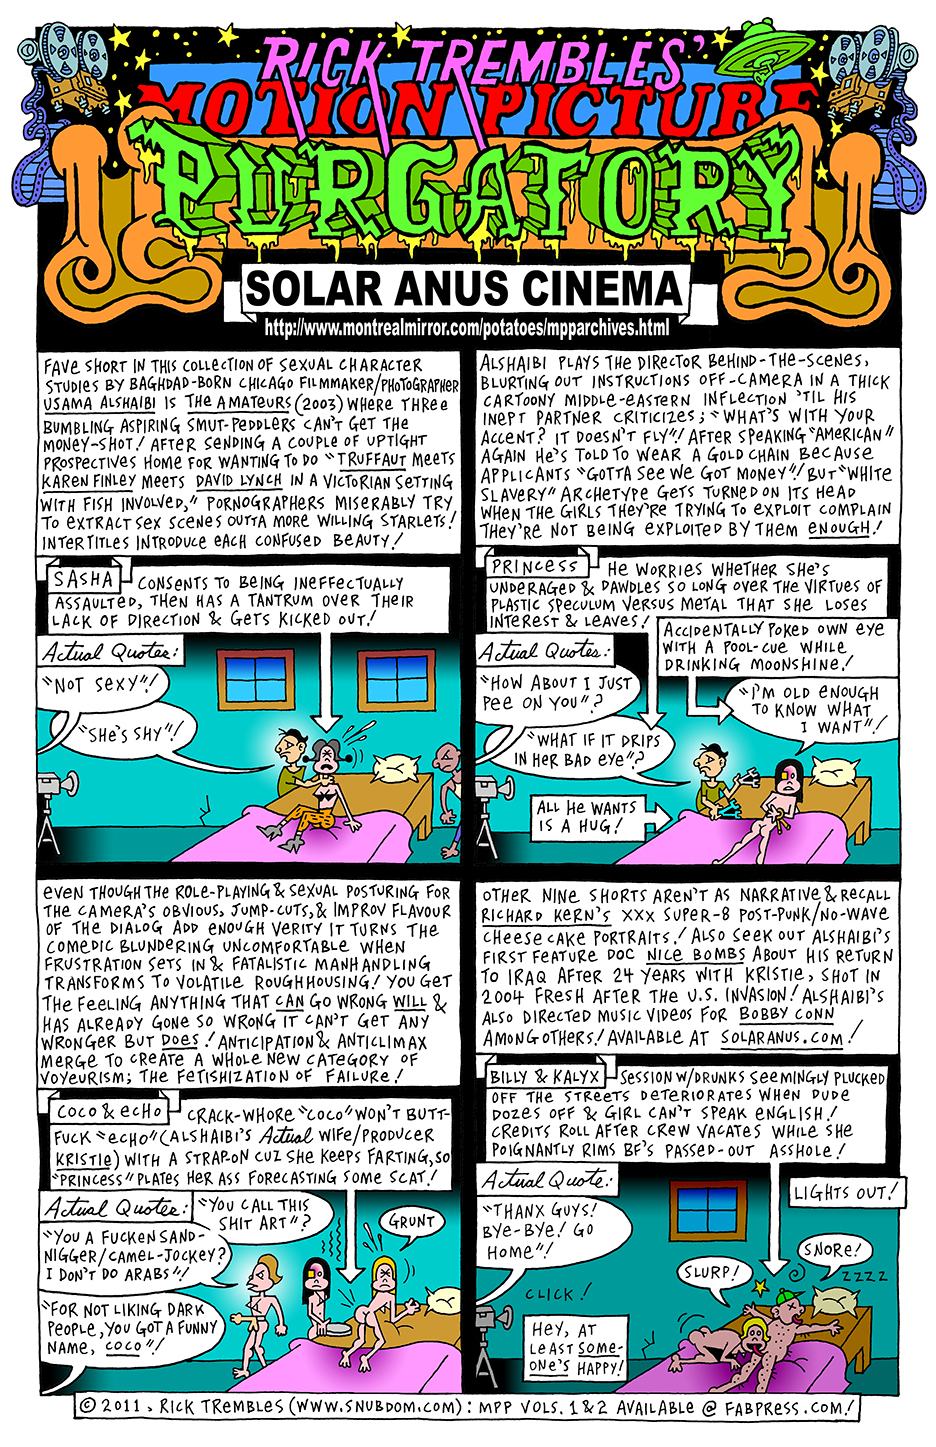 Motion Picture Purgatory Solar Anus Cinema 2010 Snubdom